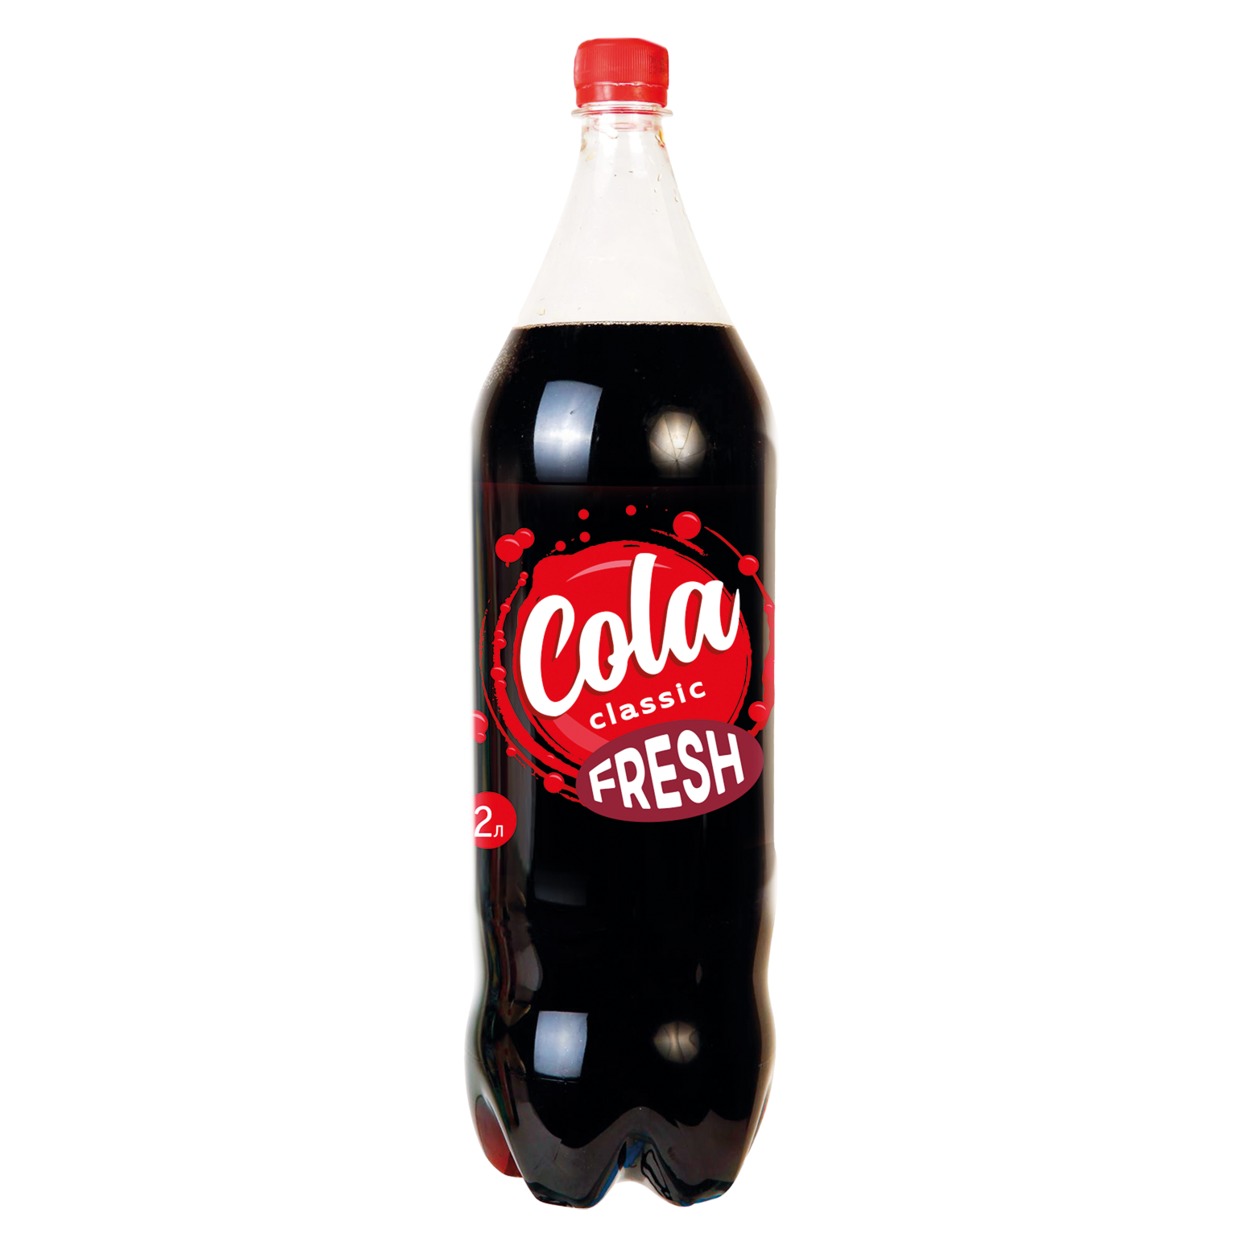 Напиток Fresh Cola, сильногазированный, 2 л по акции в Пятерочке